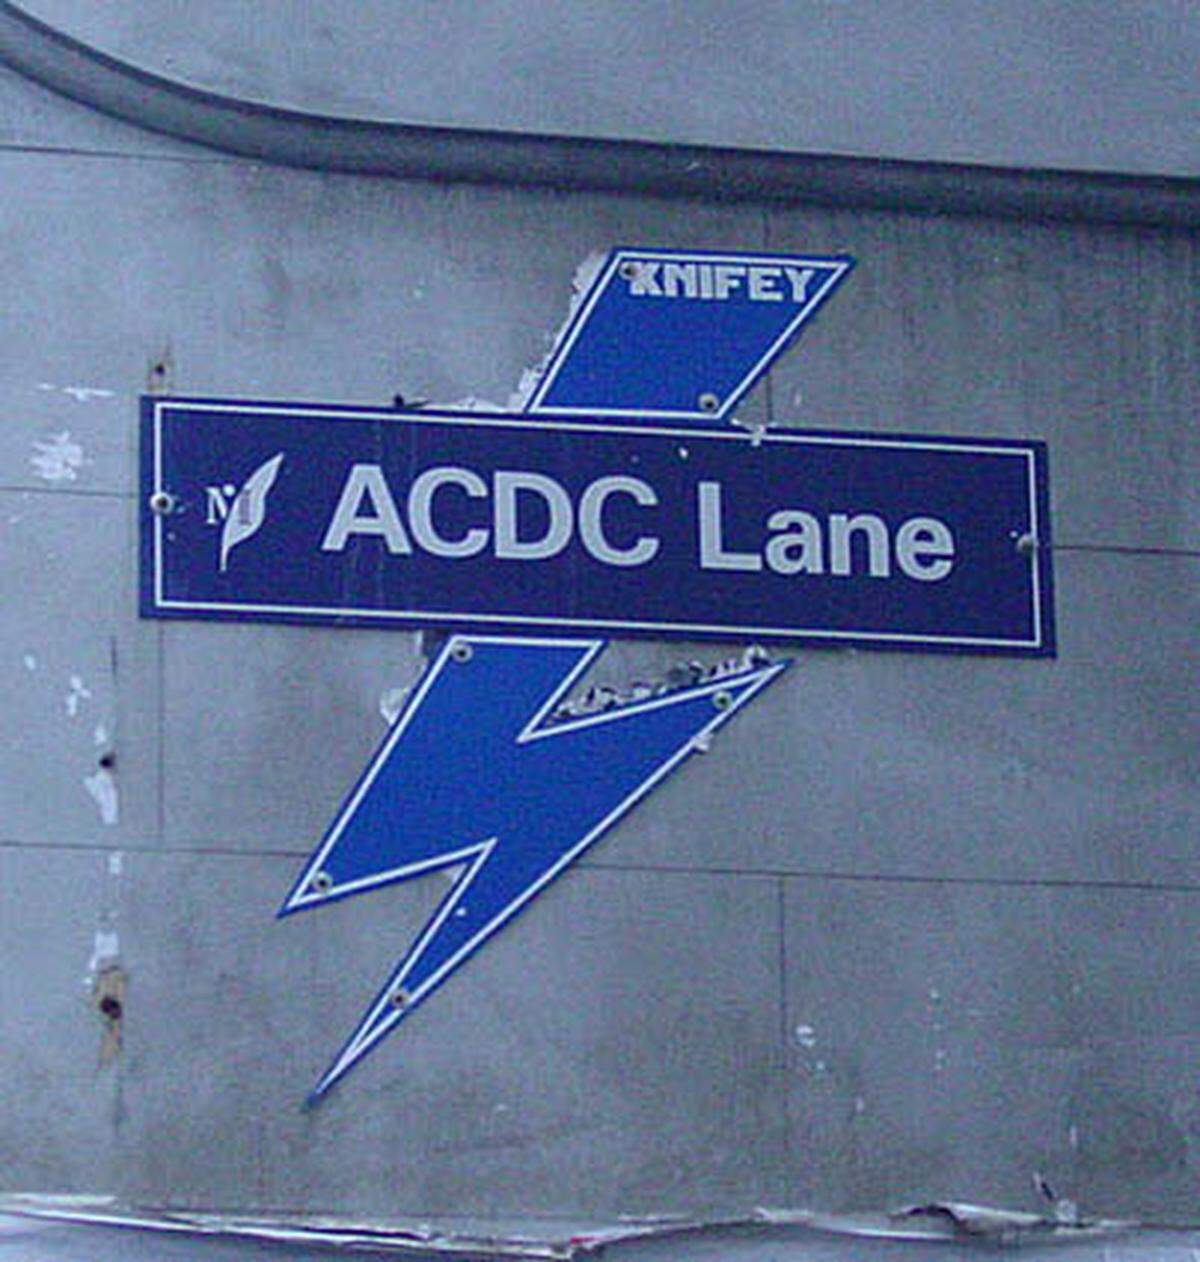 Heute sind AC/DC Legenden. Eine schmale Gasse in Melbourne wurde zu Ehren der Rockband zur "ACDC Lane". Einer der bekanntesten Videoclips der Band für den Titel "Long Way to the Top" wurde auf der Ladefläche eines Lkw in der naheglegenen Swanson Street in Melbourne gedreht. Auch in Madrid wurde bereits eine Straße nach den "Highway to Hell"-Rockern benannt.